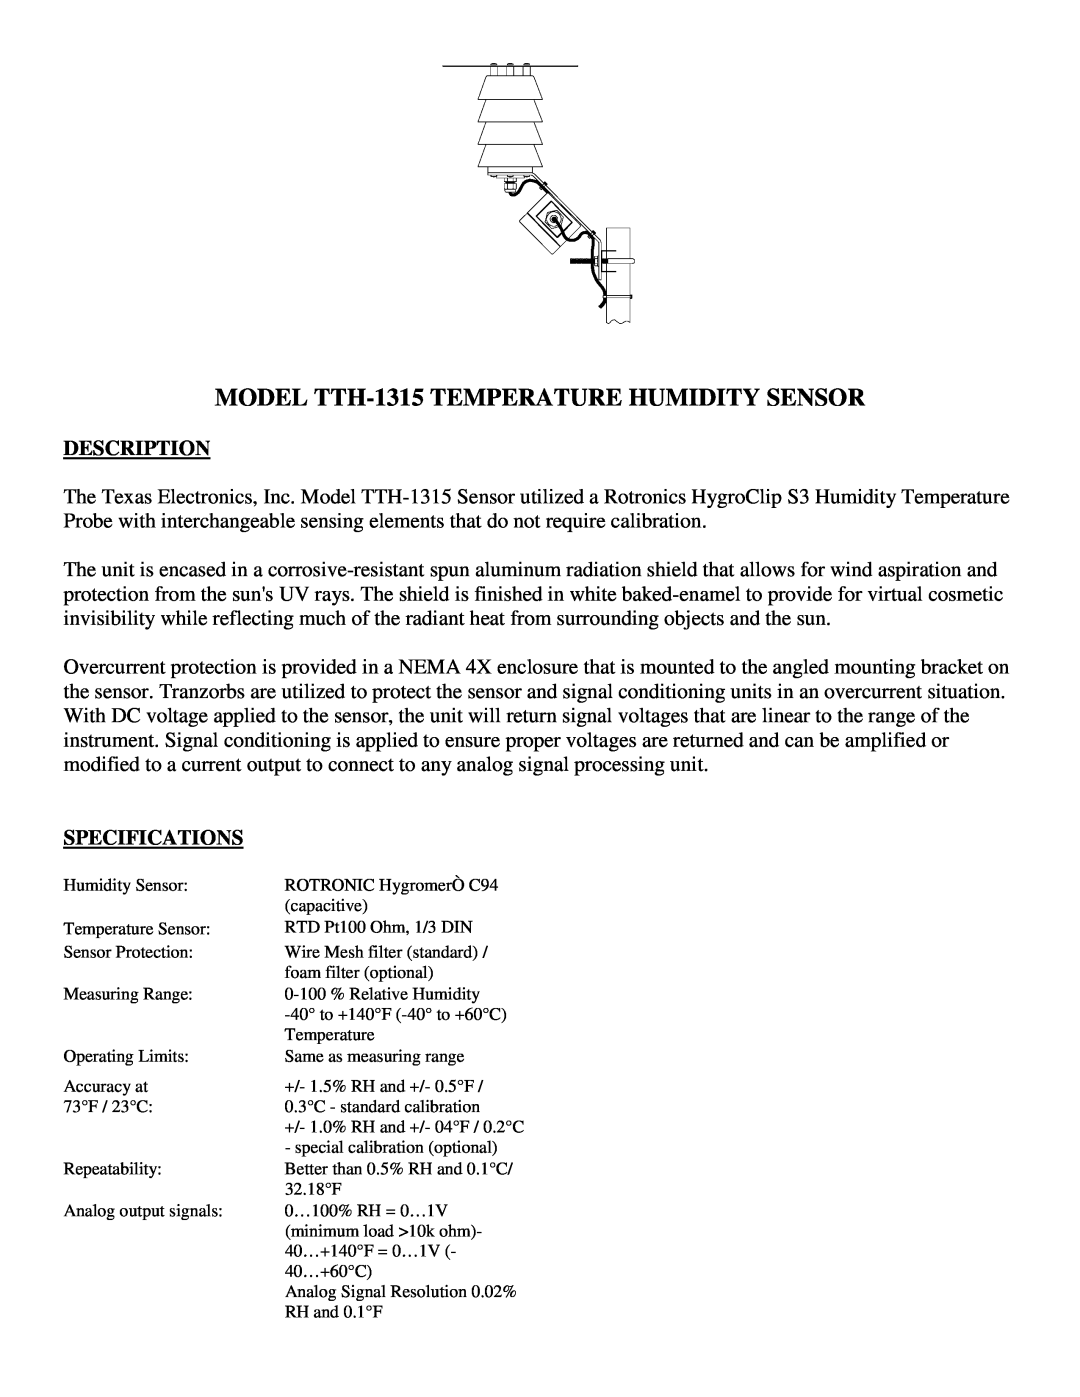 Texas Instruments TR-525I, TR-525USW user manual MODEL TTH-1315TEMPERATURE HUMIDITY SENSOR, Description, Specifications 